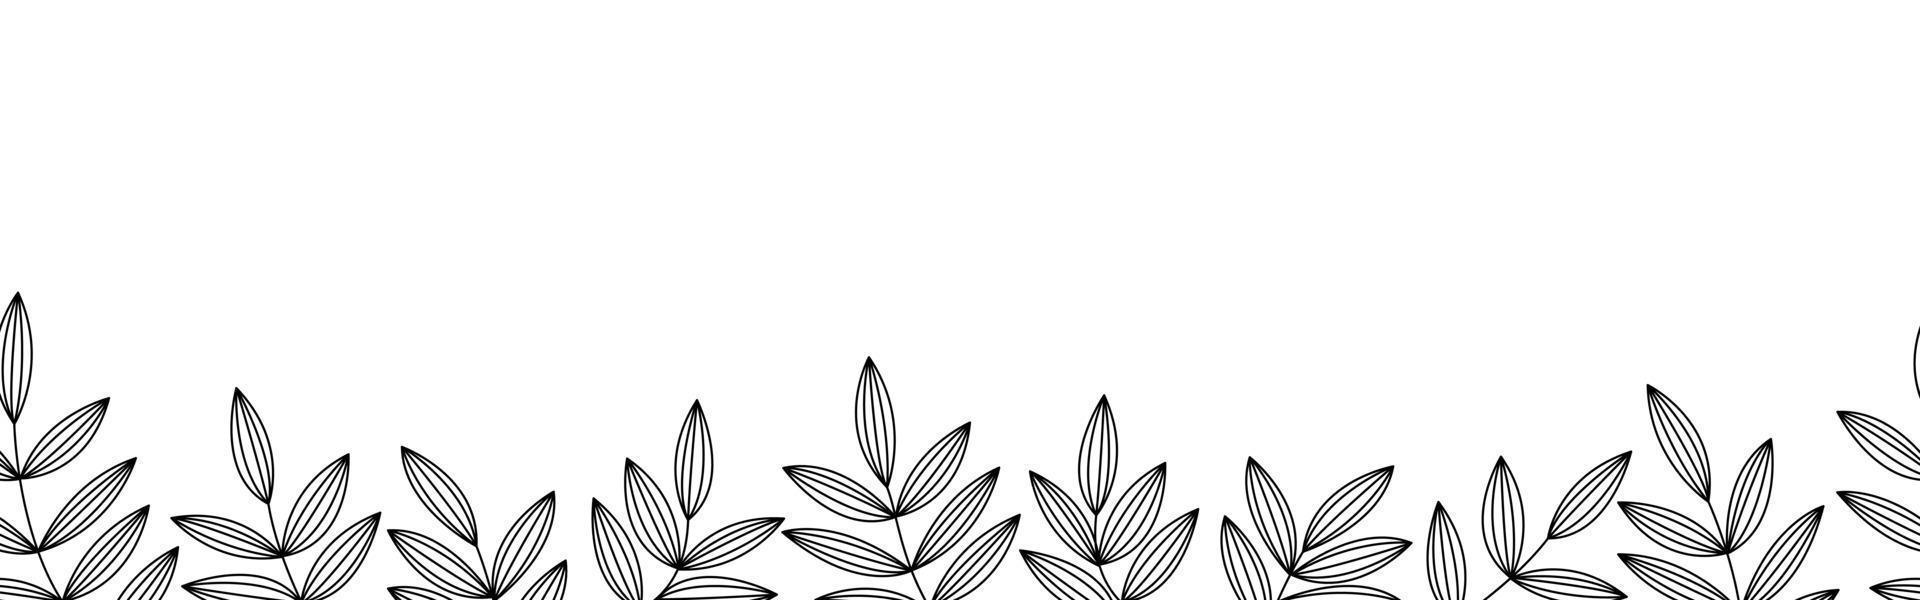 bordure florale et feuille transparente horizontale monochrome sur fond blanc. motif de fond de congé abstrait. conception de texture botanique pour l'impression, les arts muraux et le papier peint. illustration vectorielle vecteur